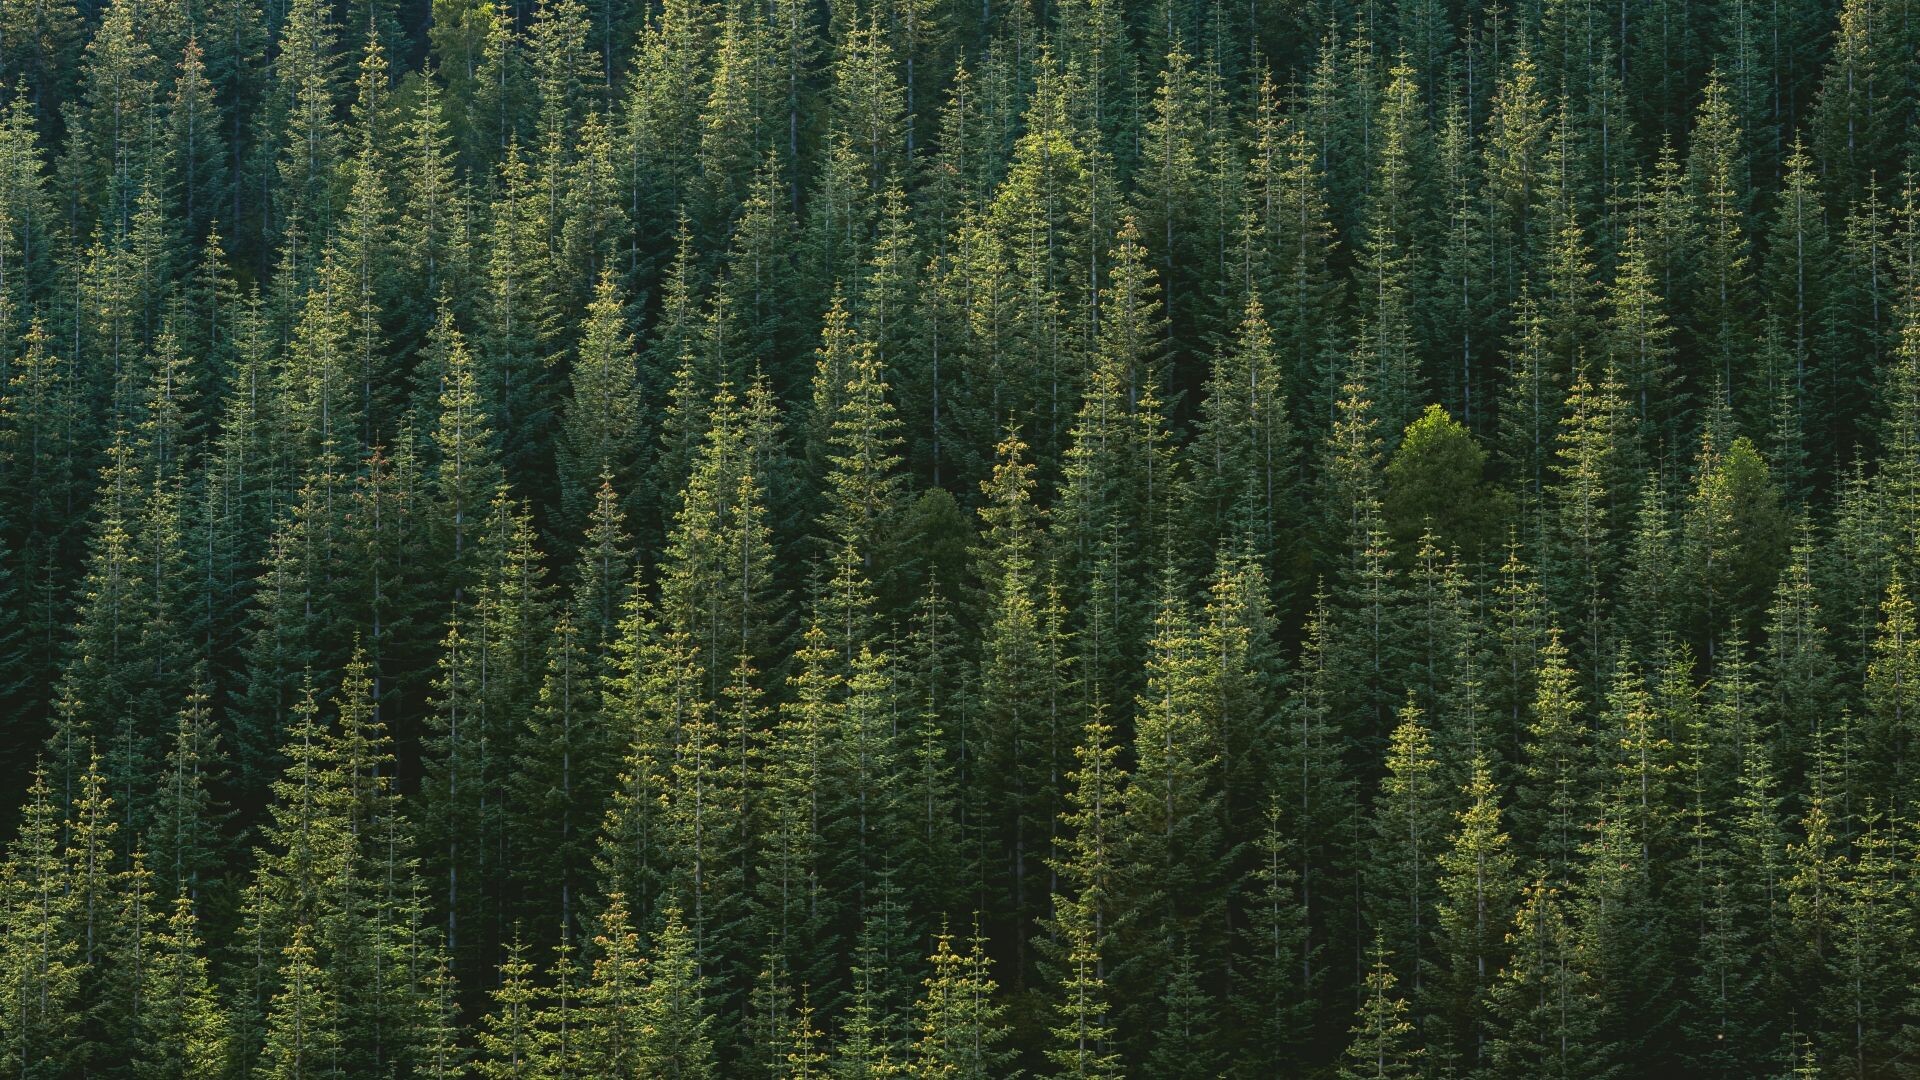 Spruce-fir forest, Baum Wallpaper, 1920x1080 Full HD Desktop